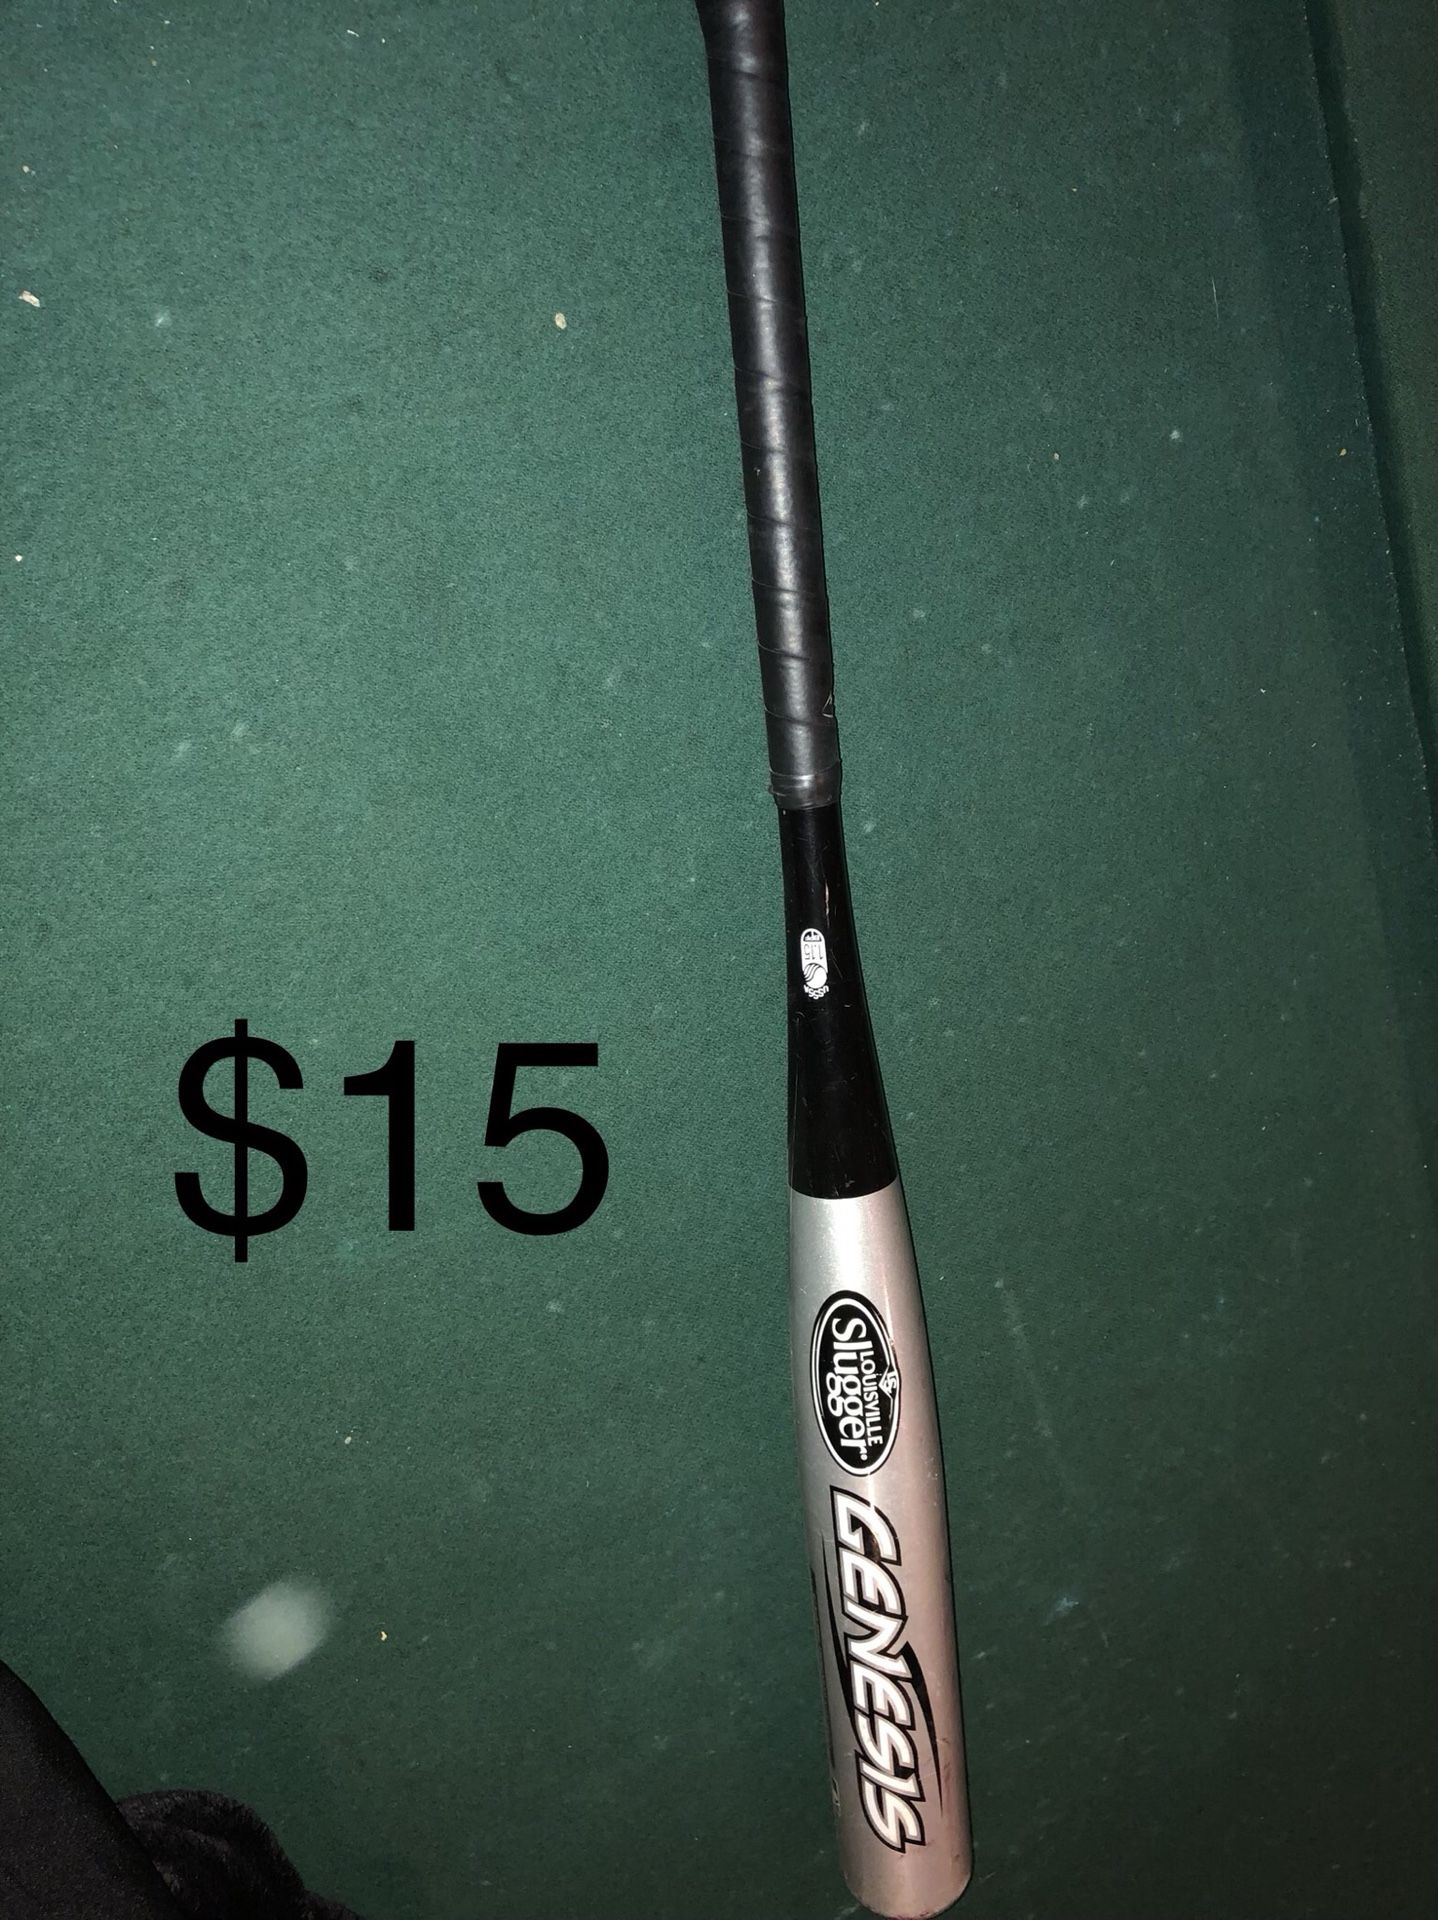 Baseball bat. Louisville slugger size 29